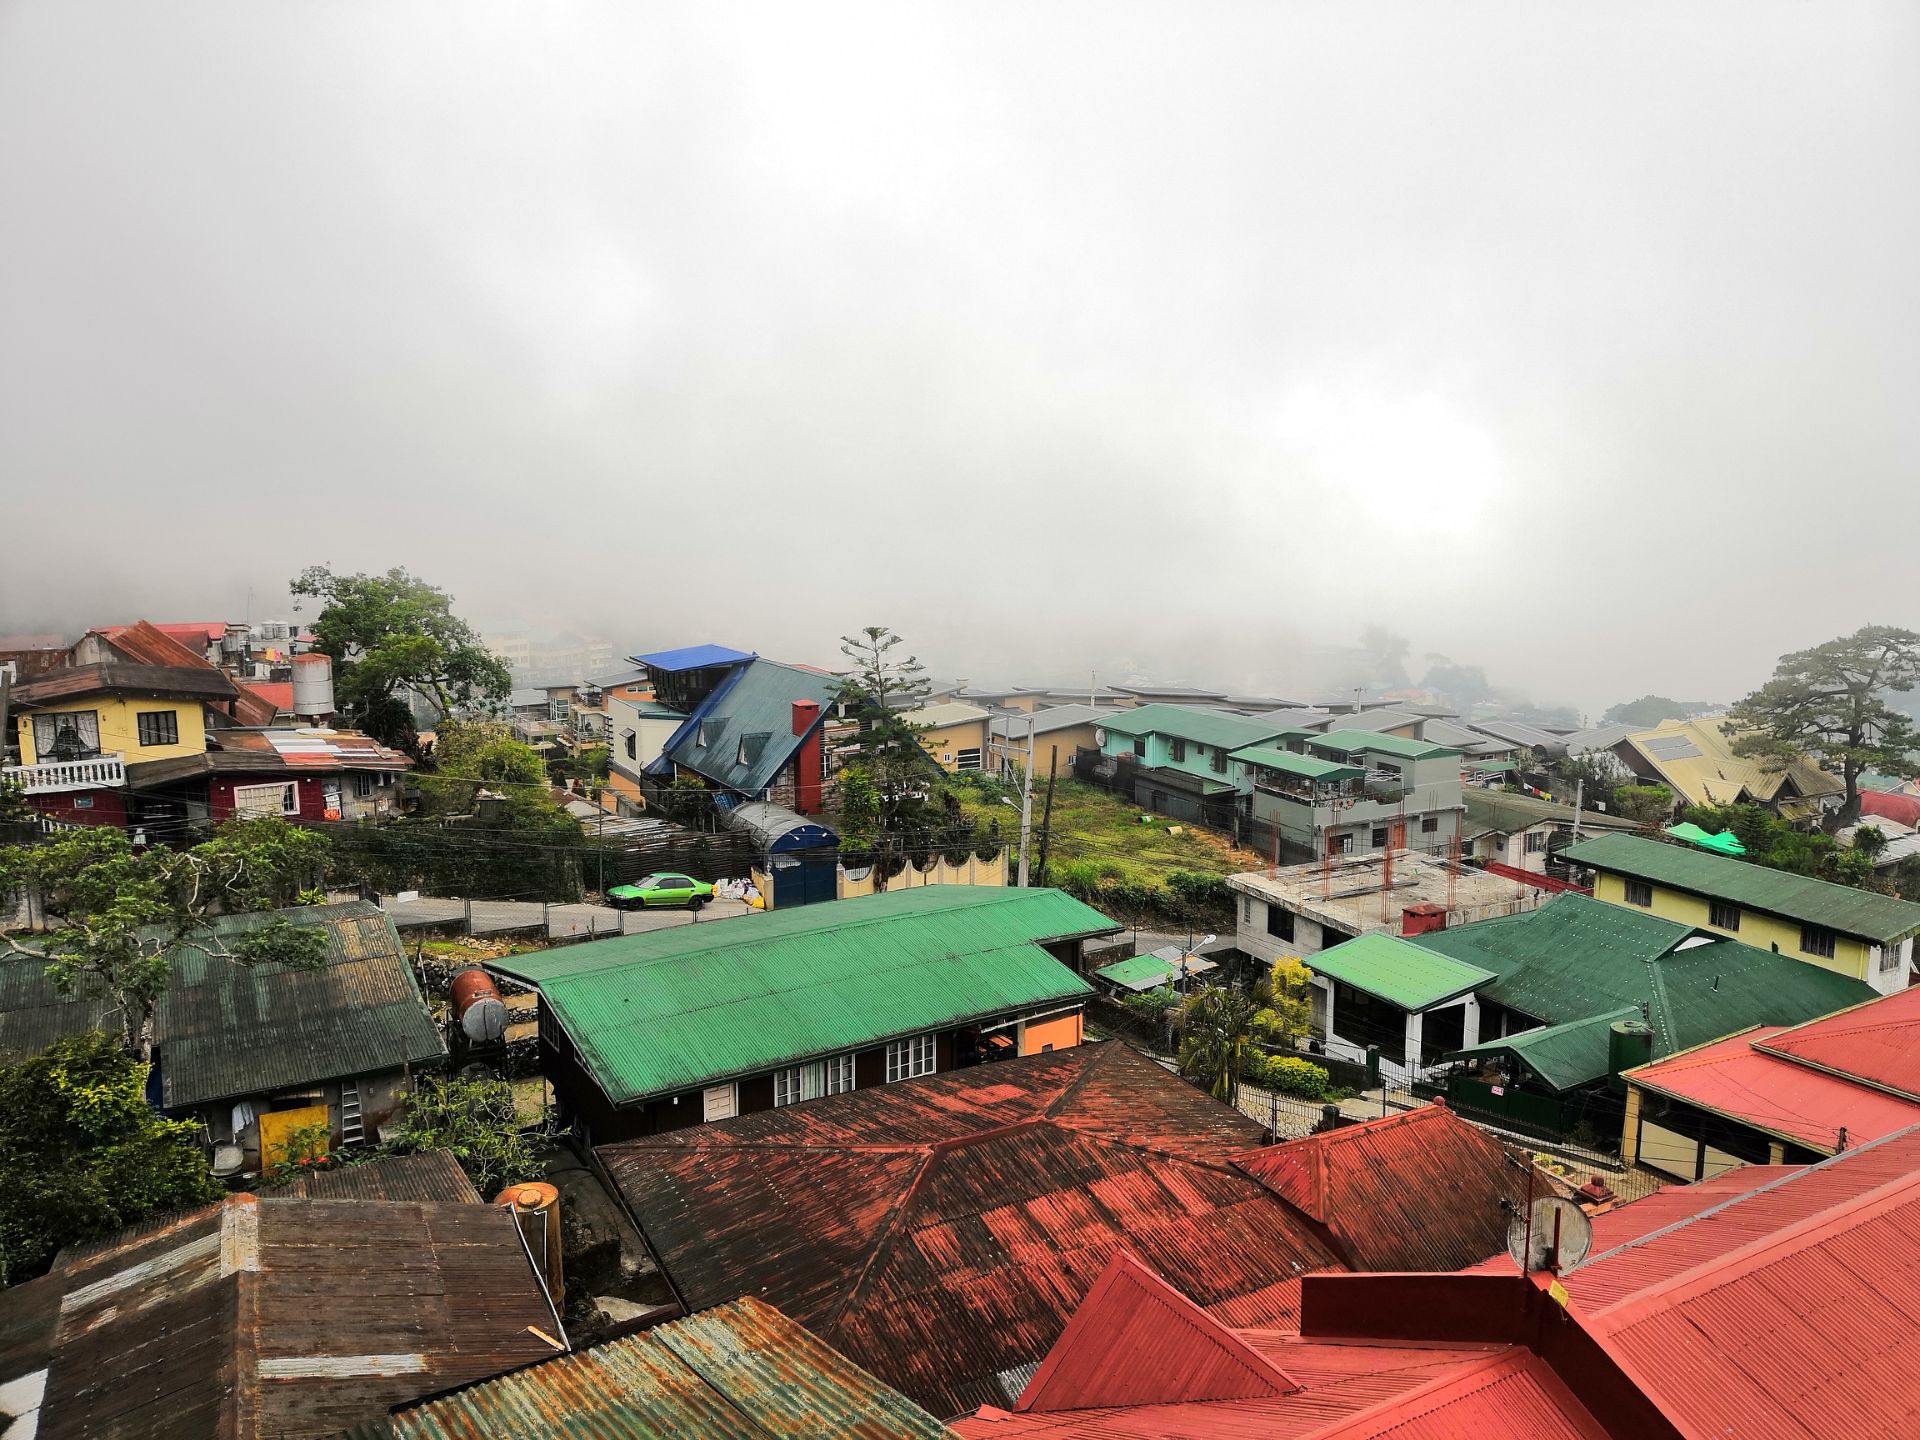 Baguio San Luis village